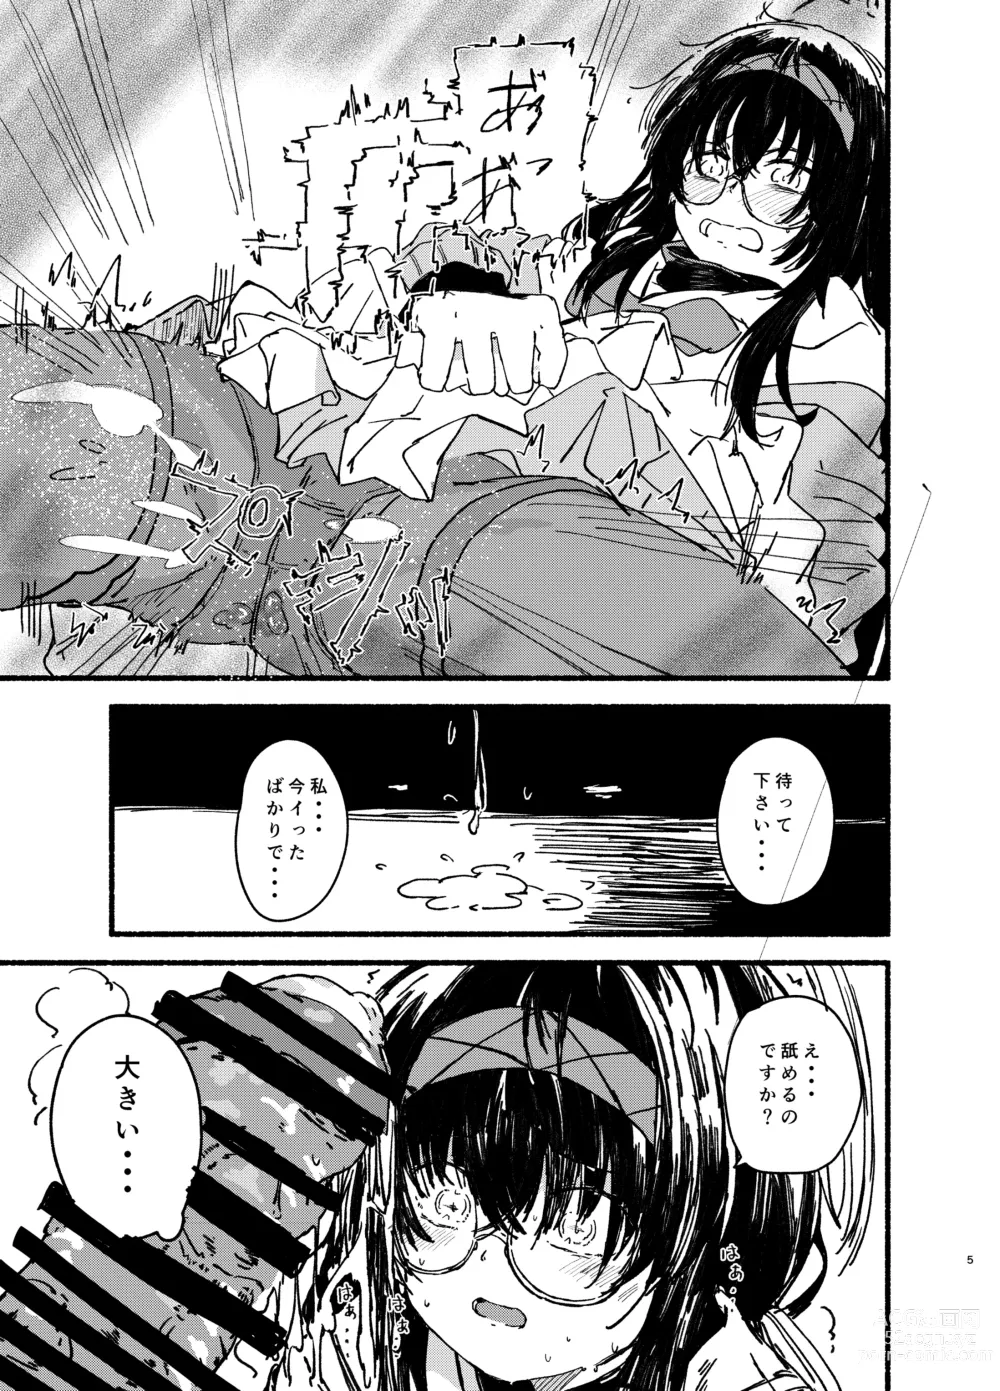 Page 5 of doujinshi Ui o Isshoukenmei Kawaigaru